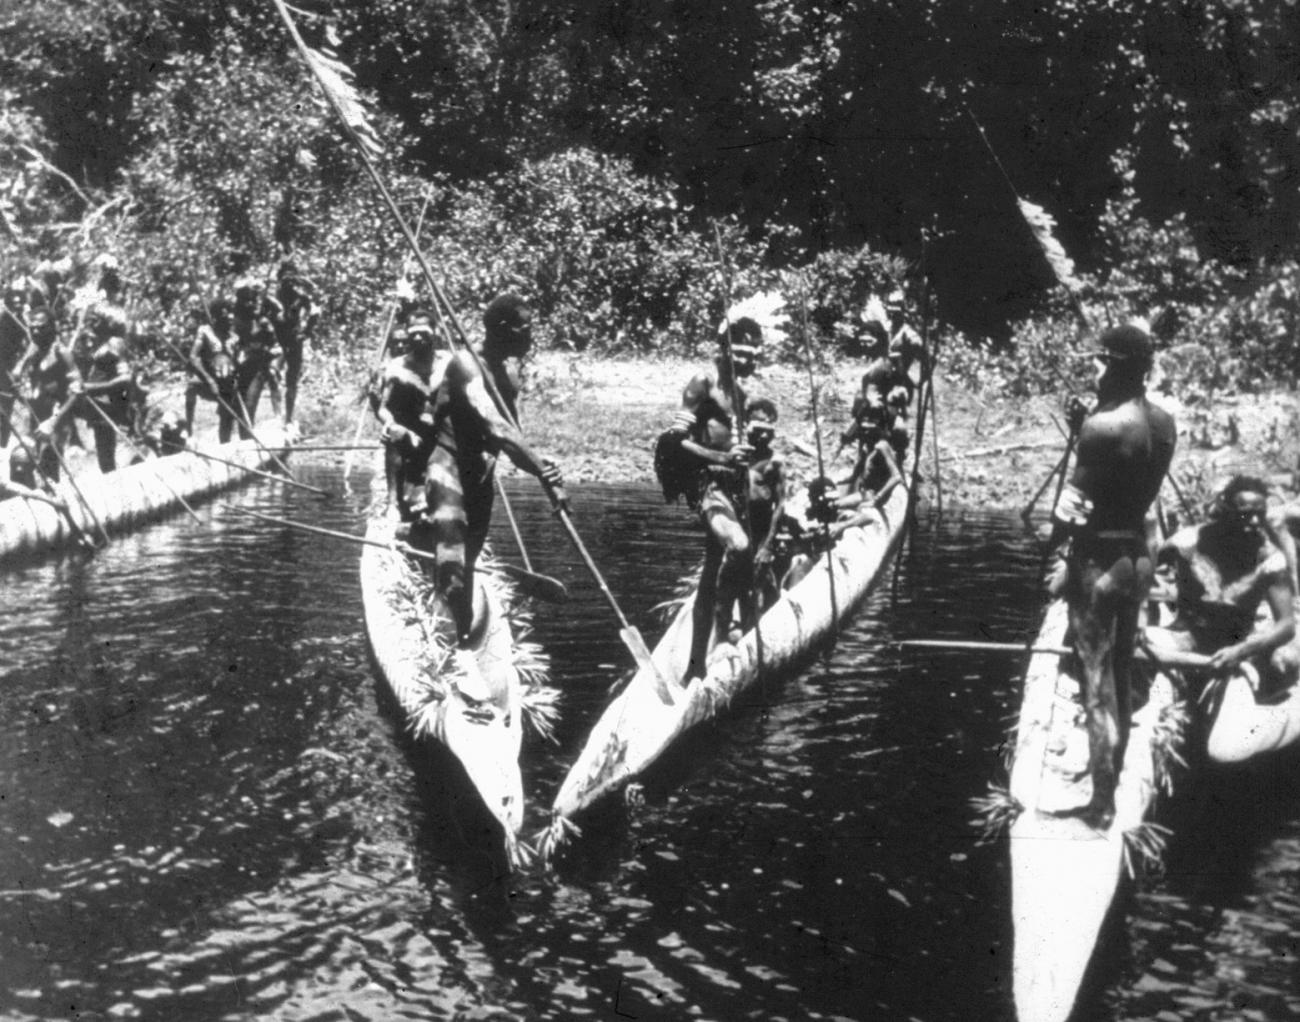 BD/216/178 - 
Feestelijk versierde Asmatters met prauwen op de rivier
